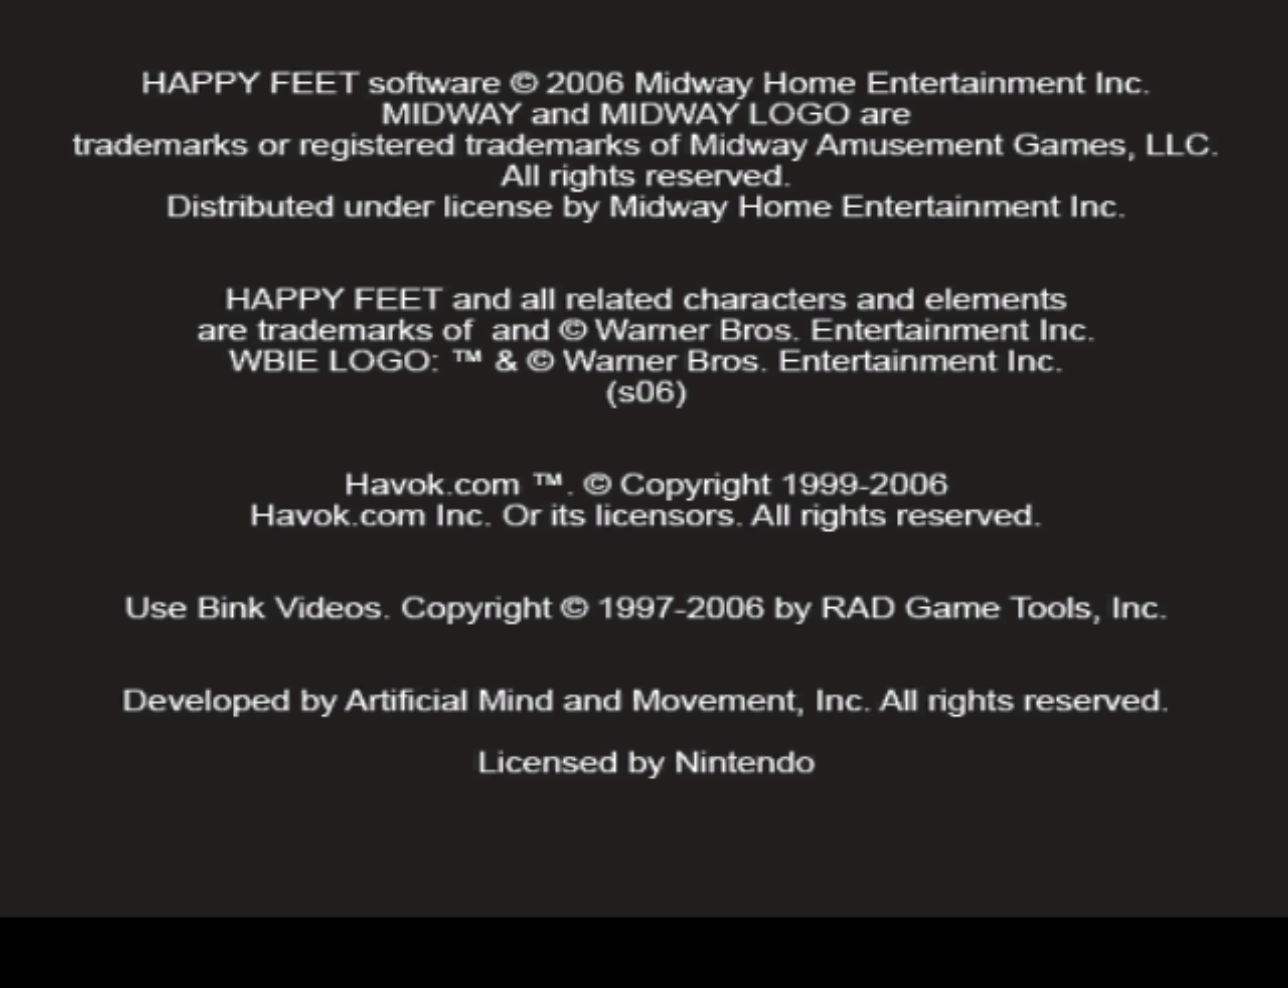 Happy Feet (GameCube) (En,Fr) gameplay image 8.png